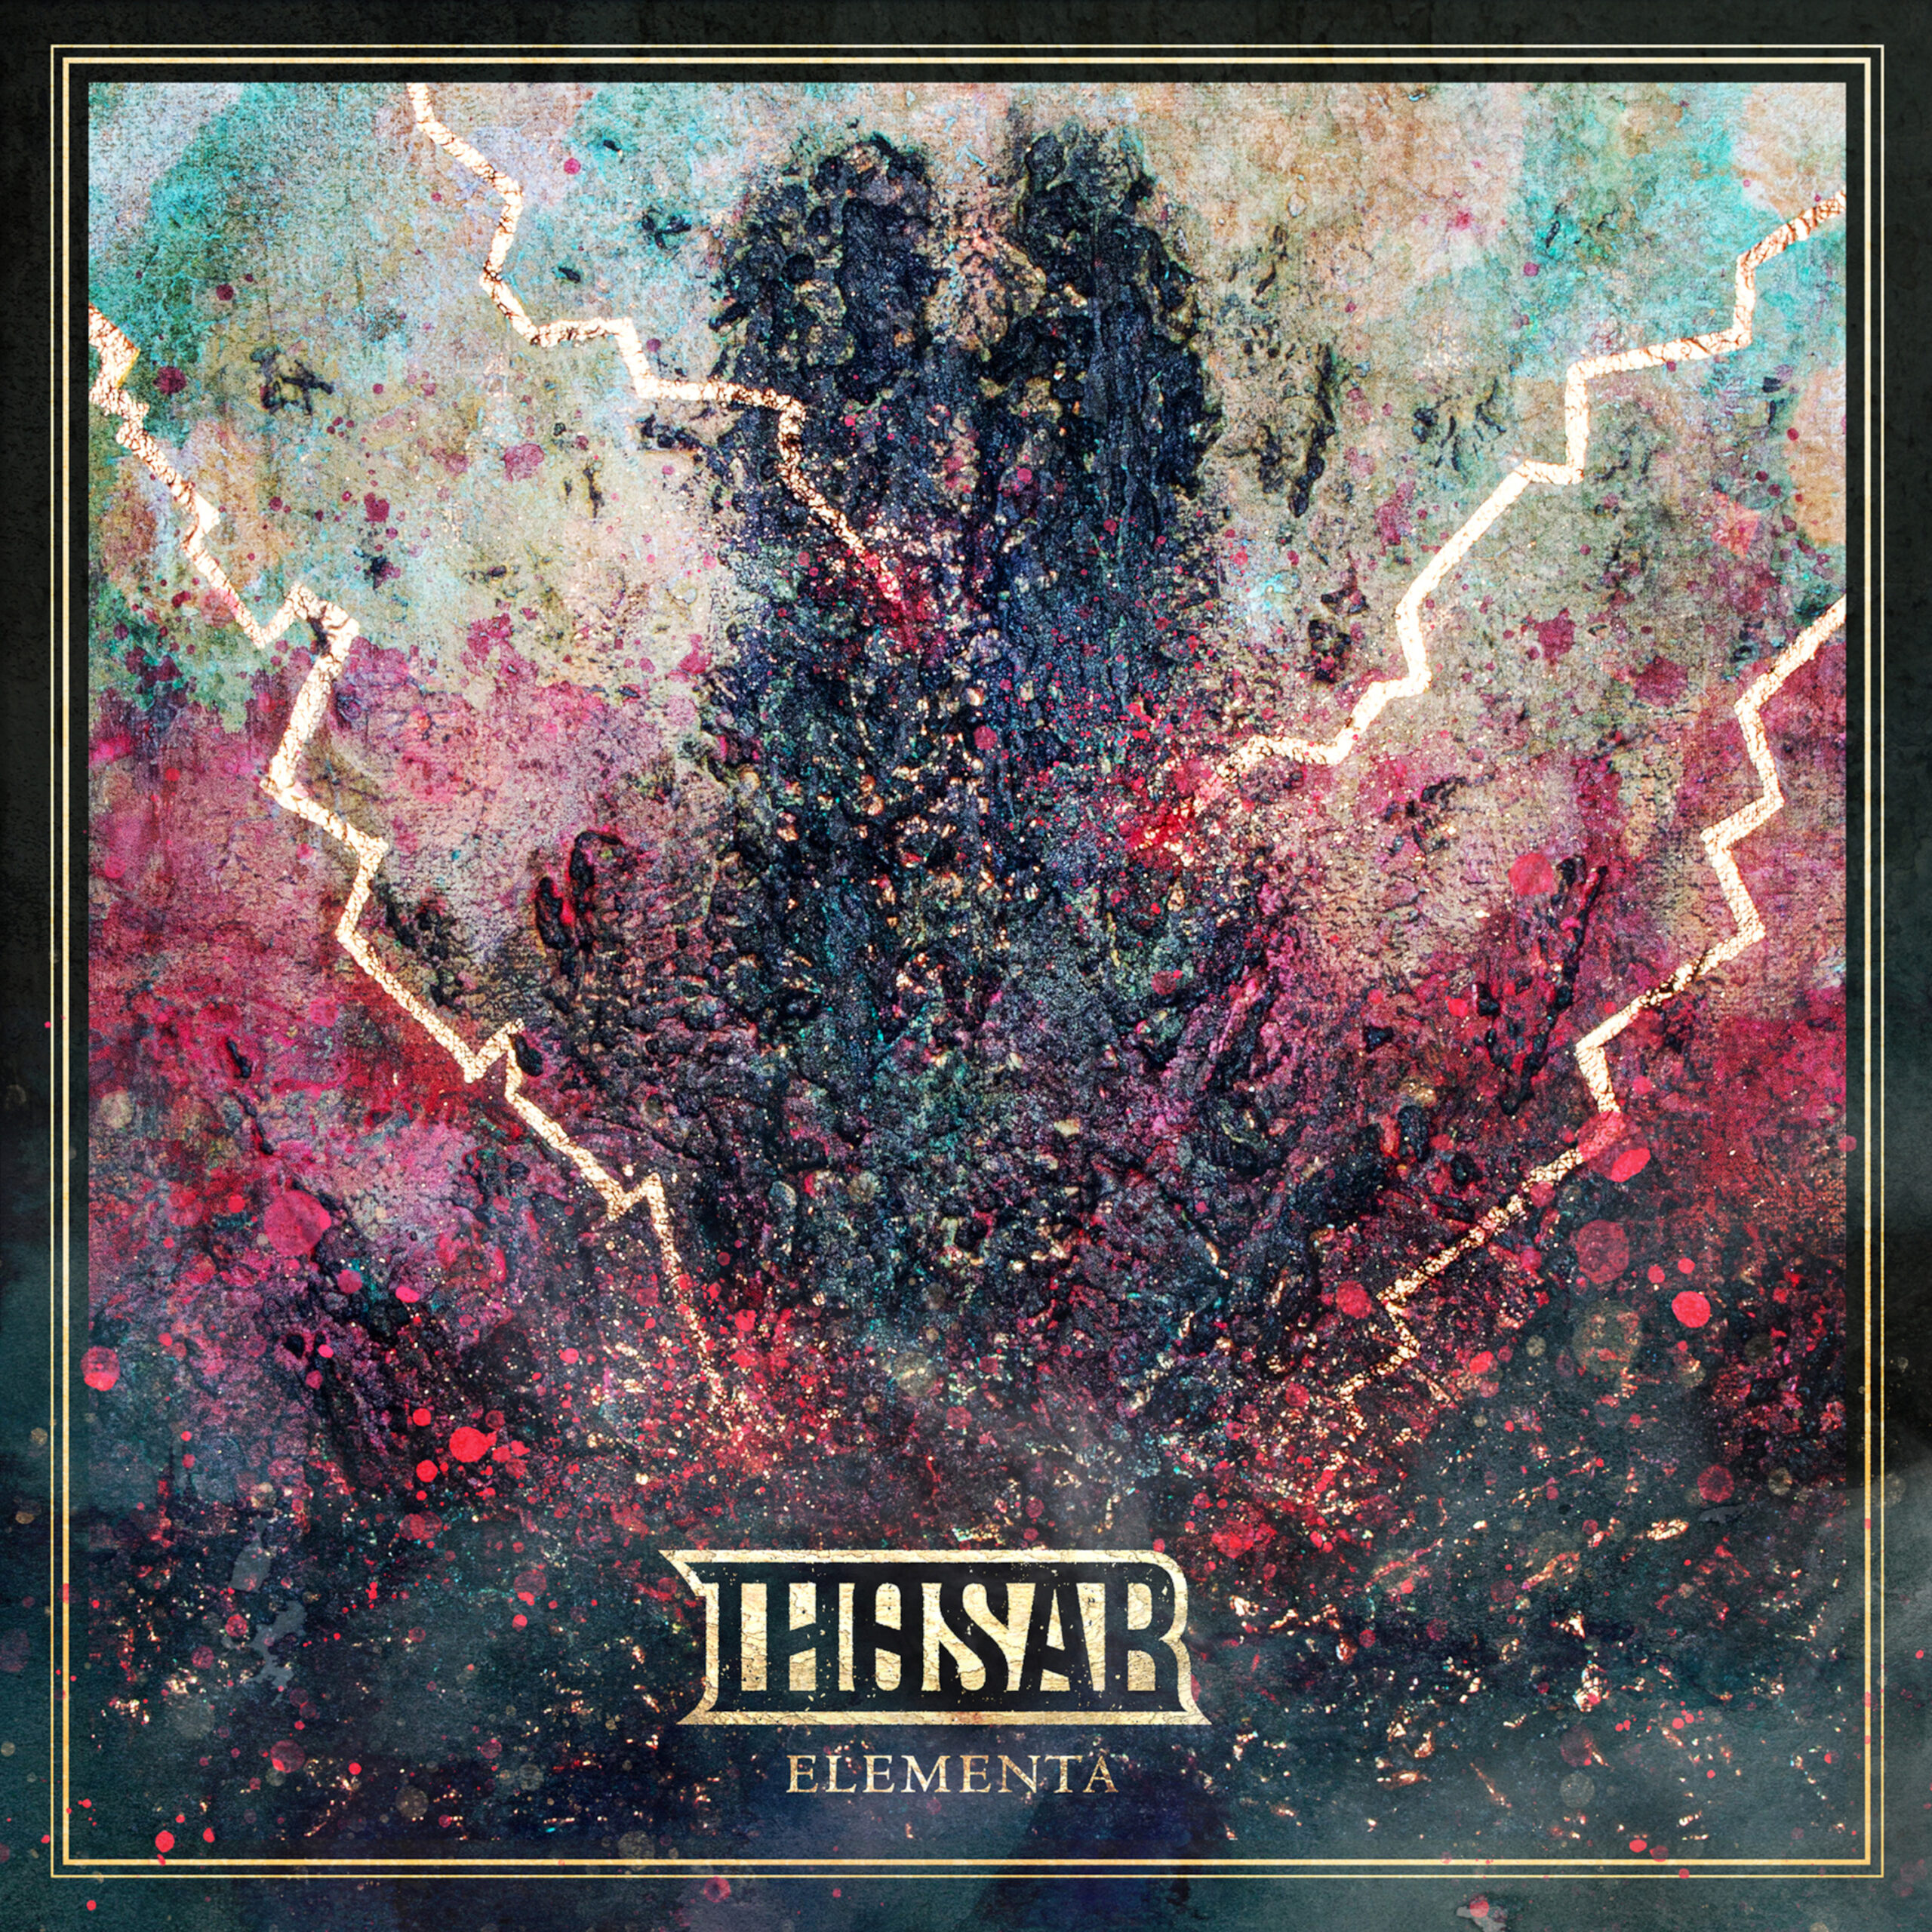 Thosar - Elementa (Full Album)